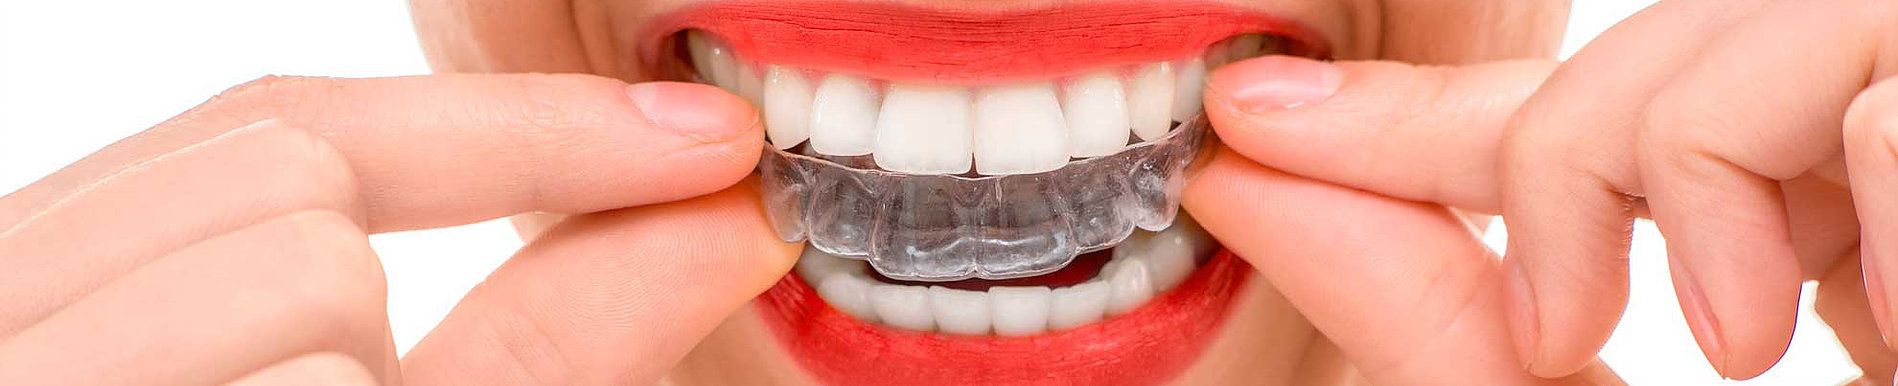 tratamientos dentales clinica dental ventas toledo